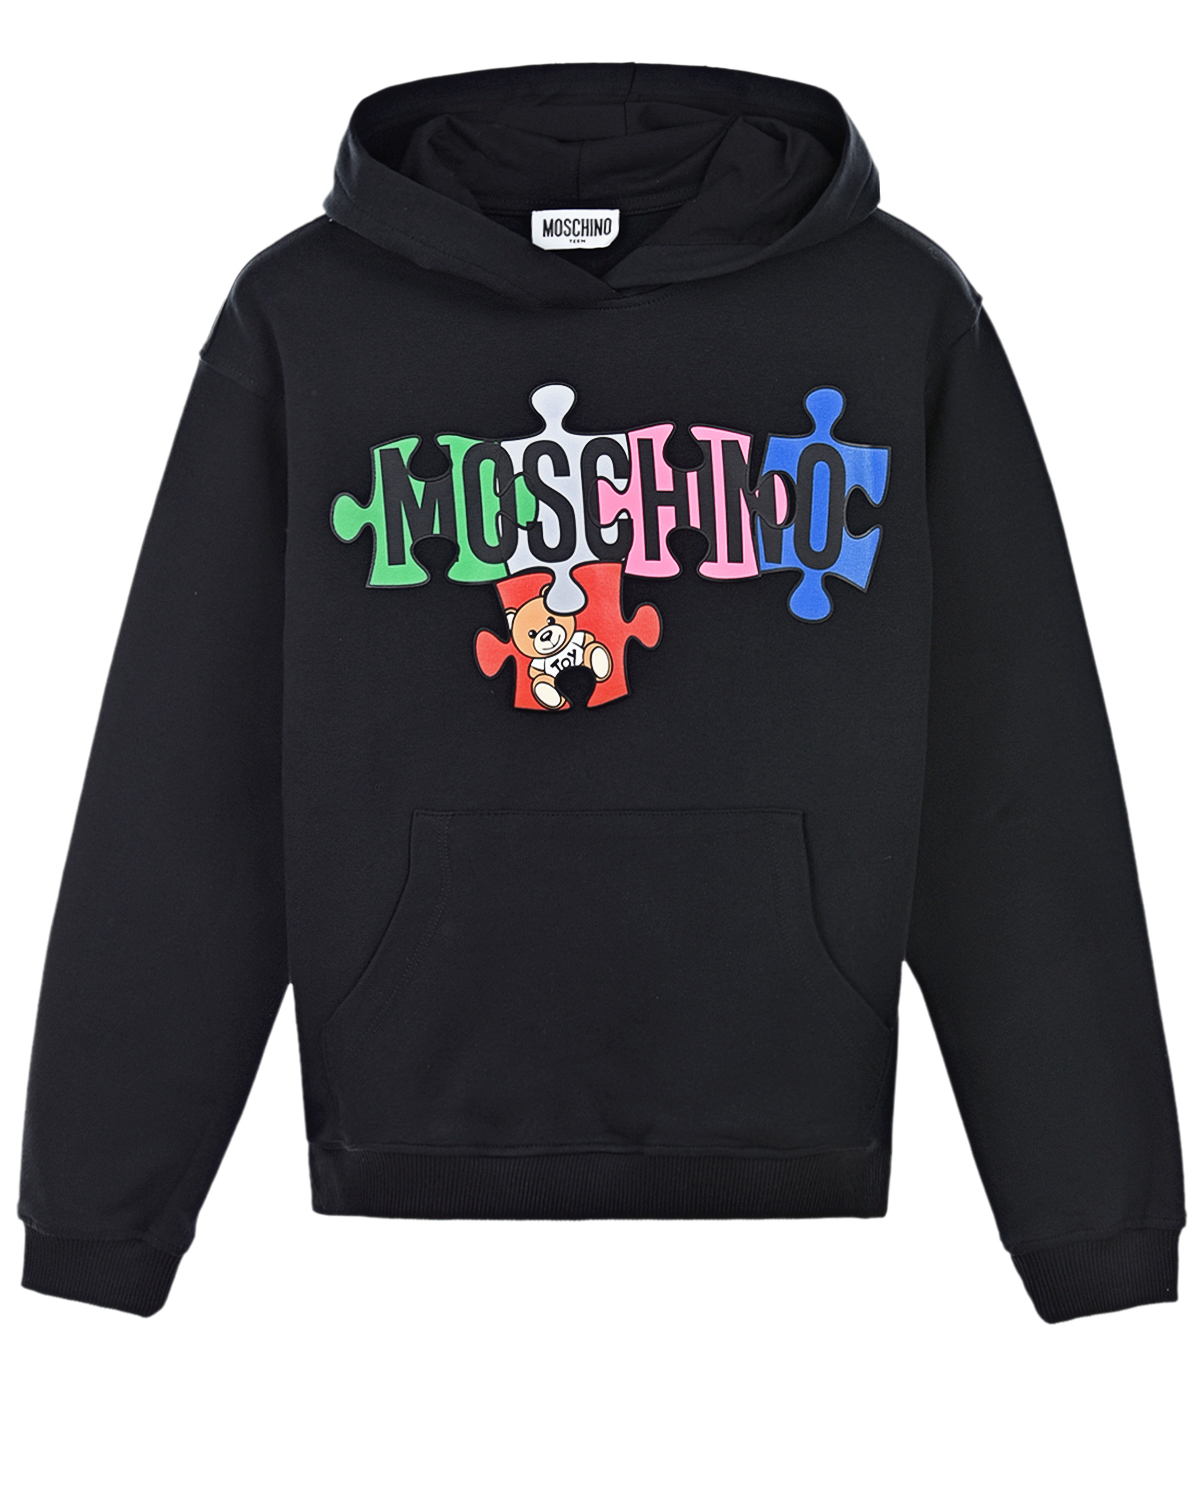 Где купить Черная толстовка-худи с ярким логотипом Moschino детская Moschino 